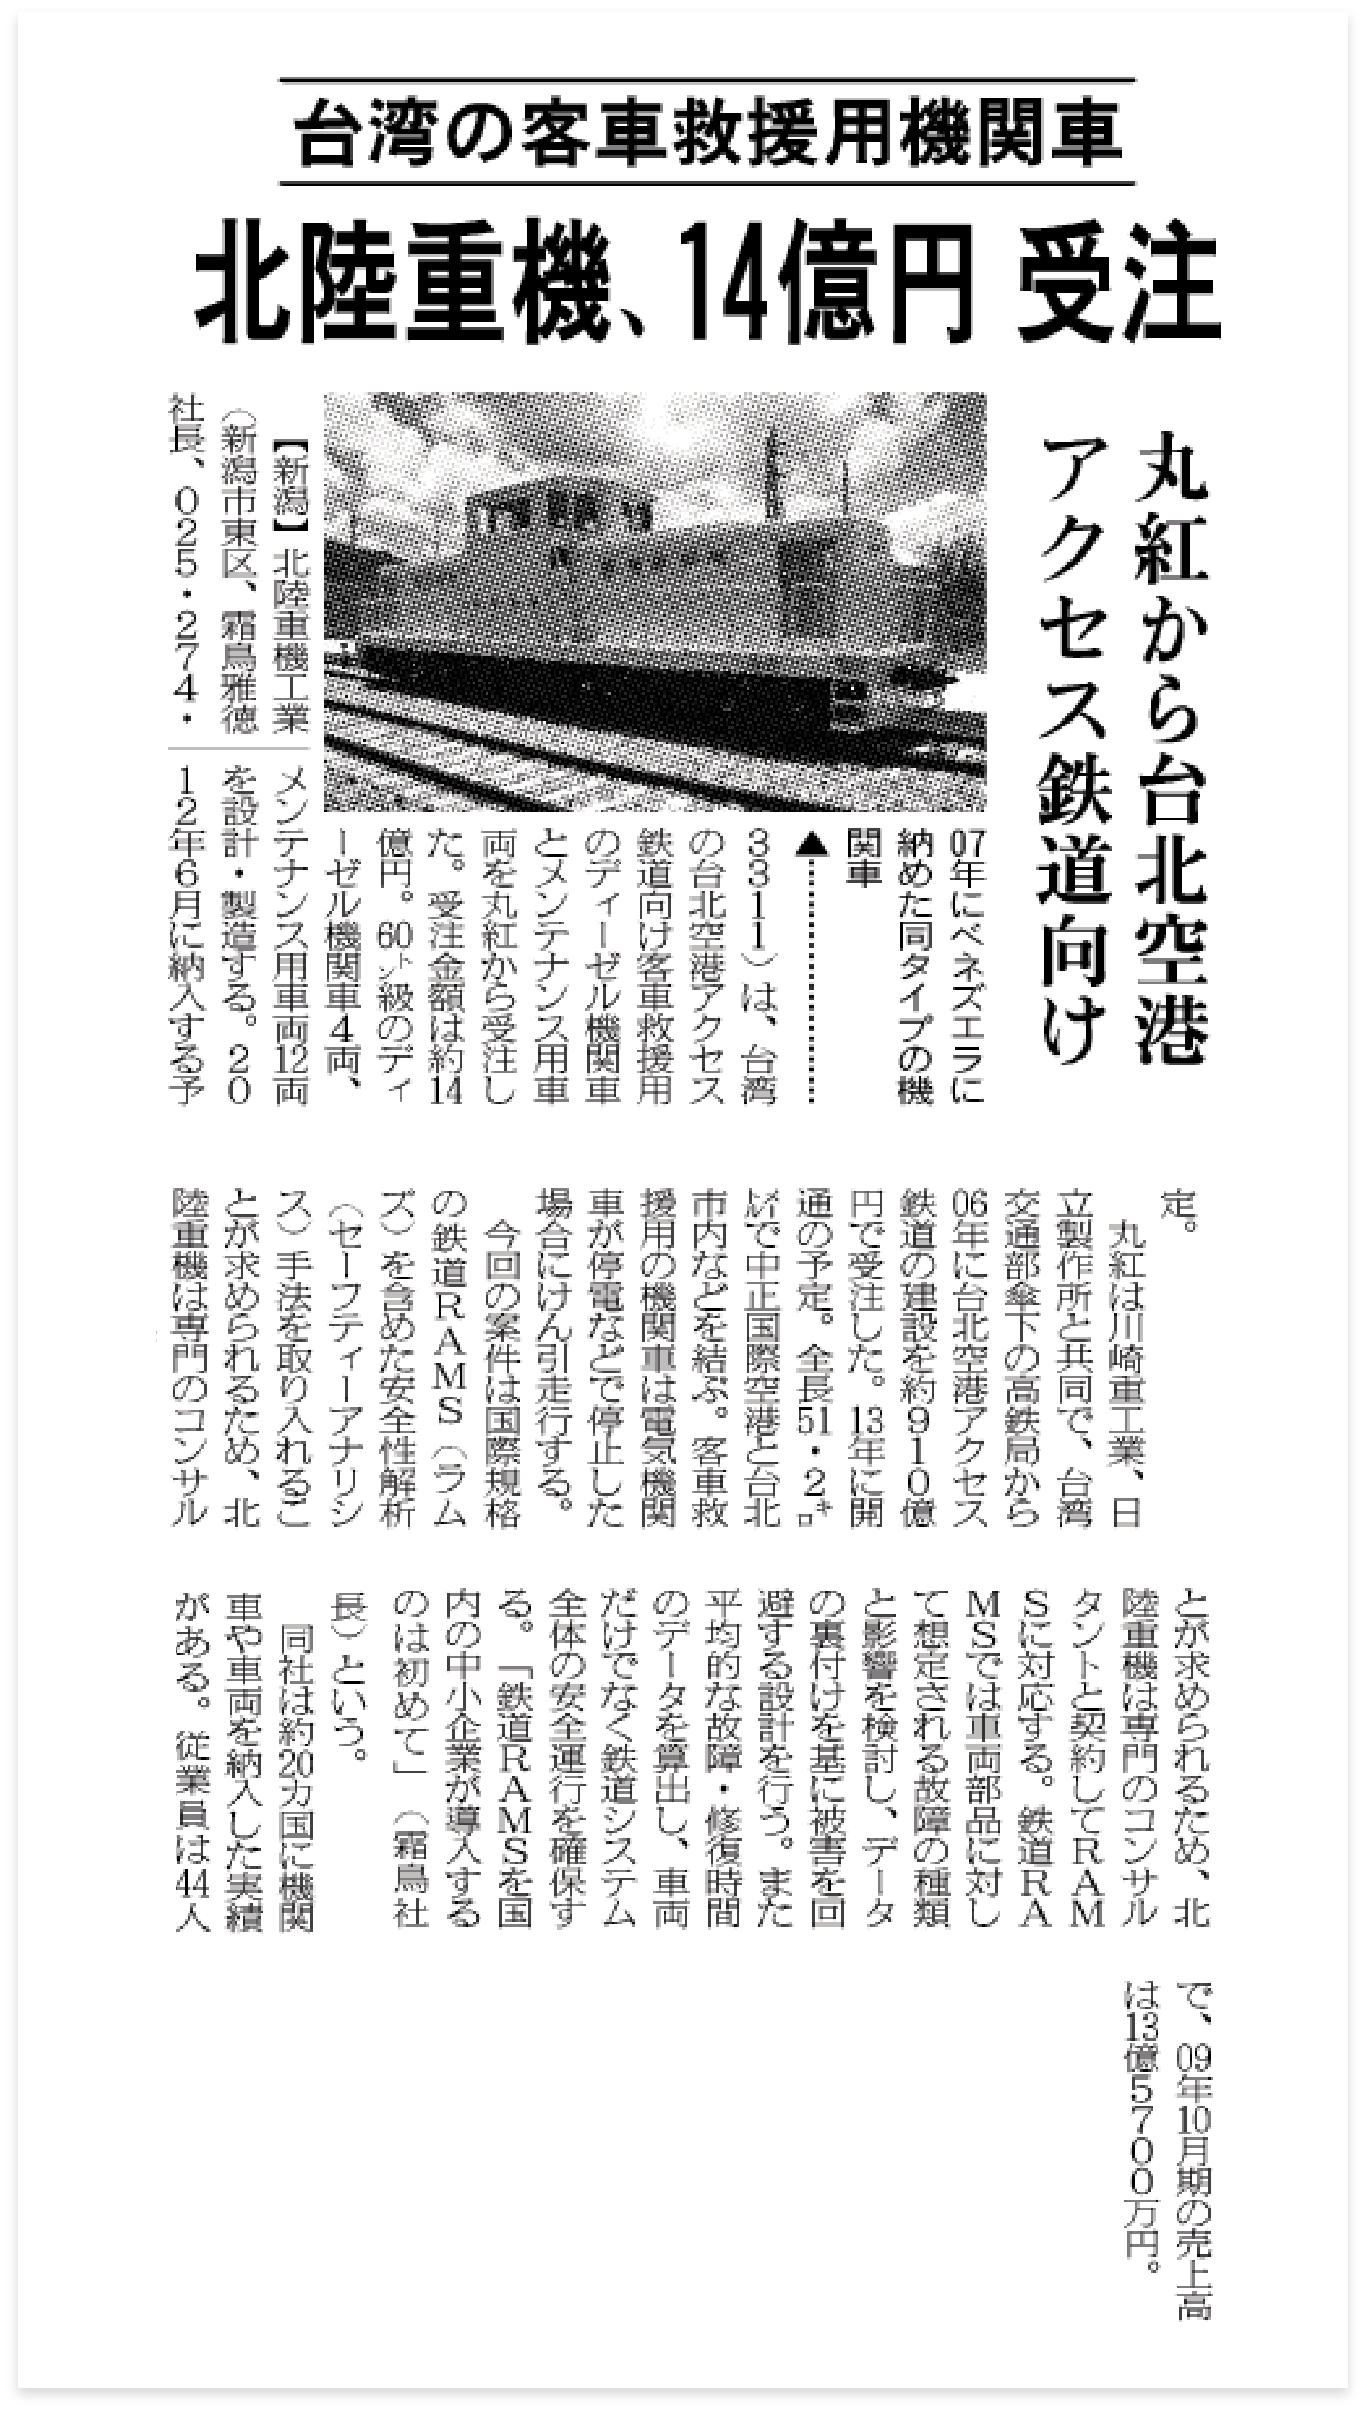 Nikkan Kogyo Shimbun (on the first page printed on August 5, 2010).